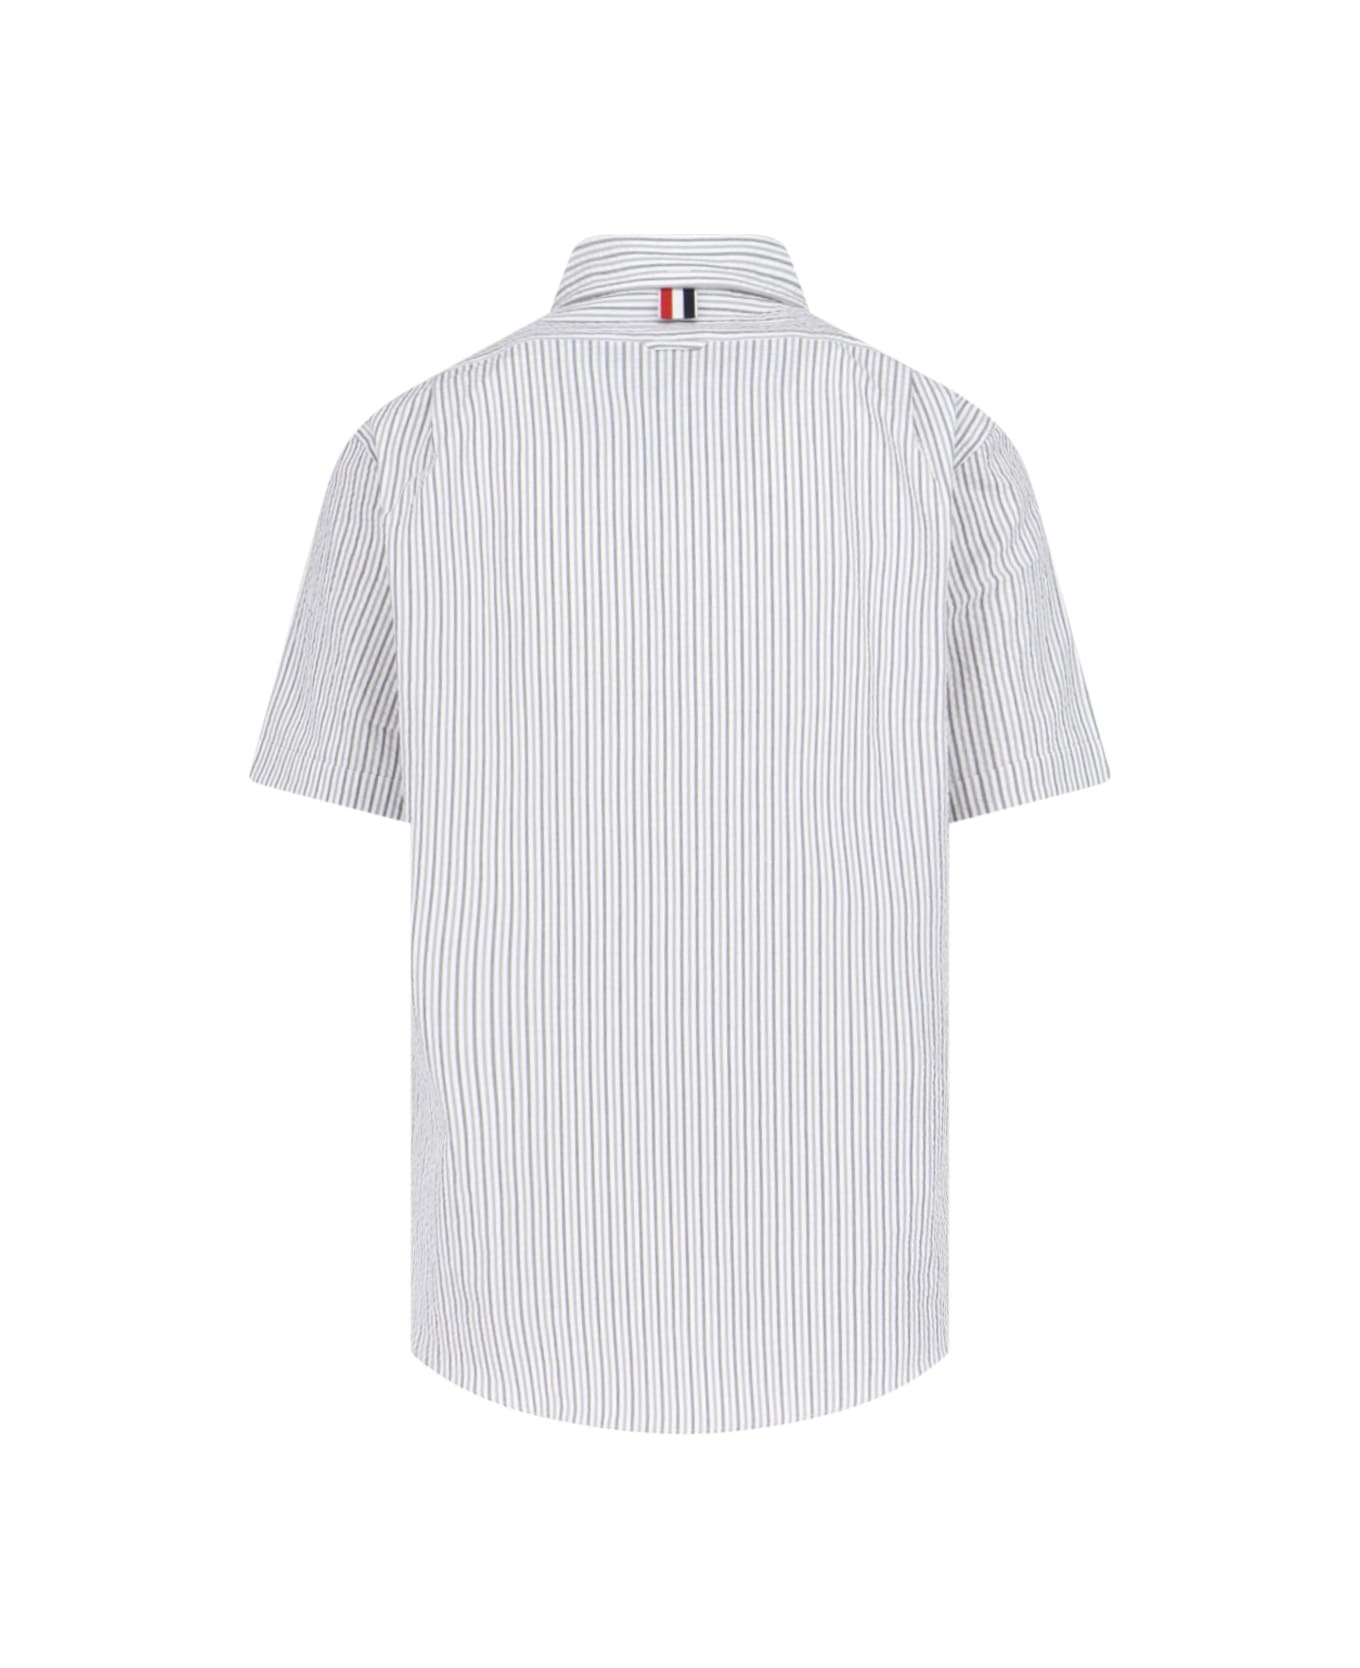 Thom Browne Shirt - Silver シャツ